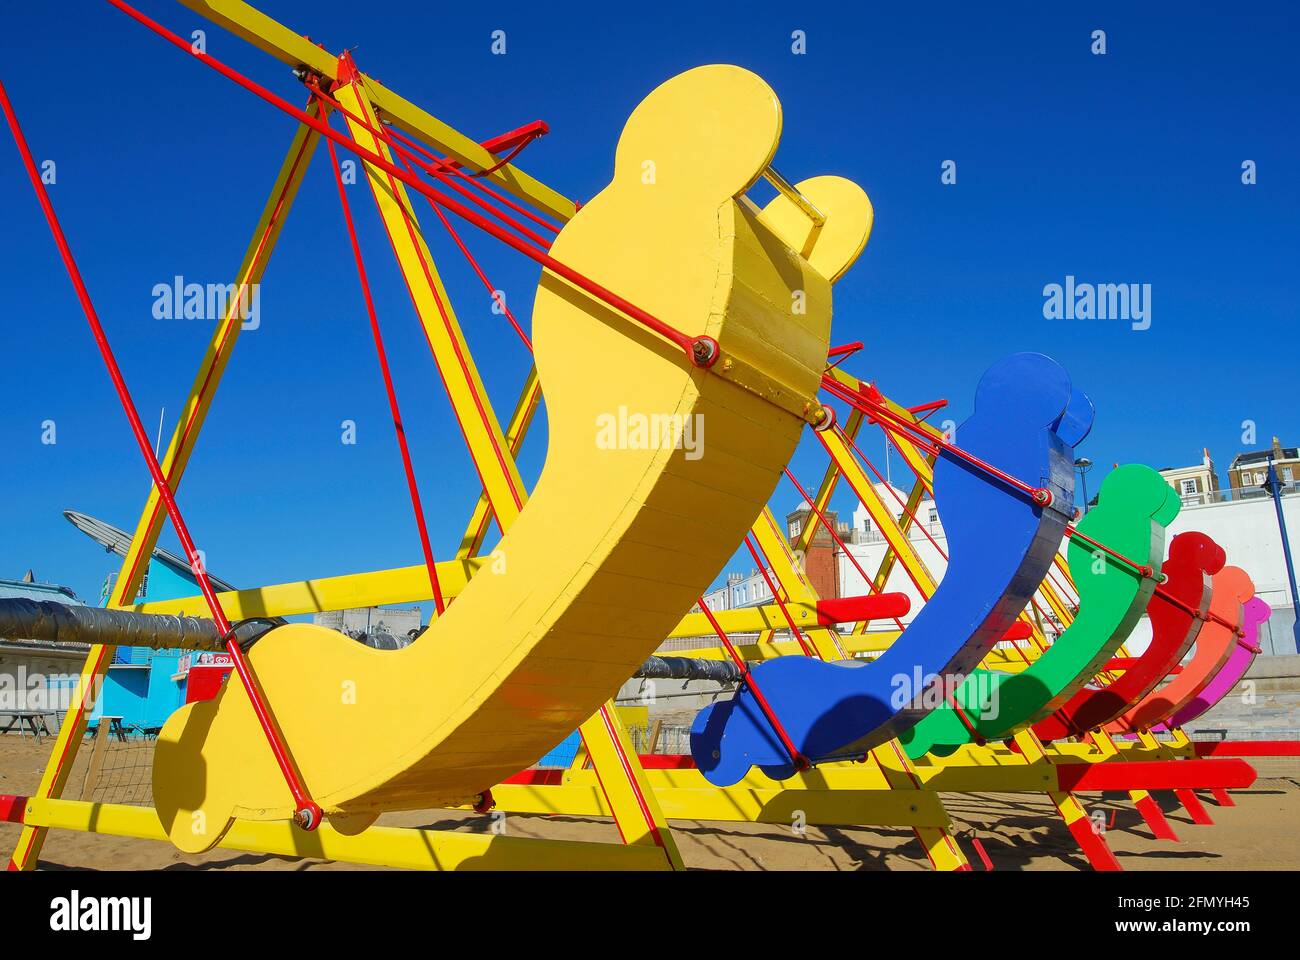 Shuggie colorate barche sulla spiaggia principale di Ramsgate Sands, Ramsgate, isola di Thanet, Kent, England, Regno Unito Foto Stock